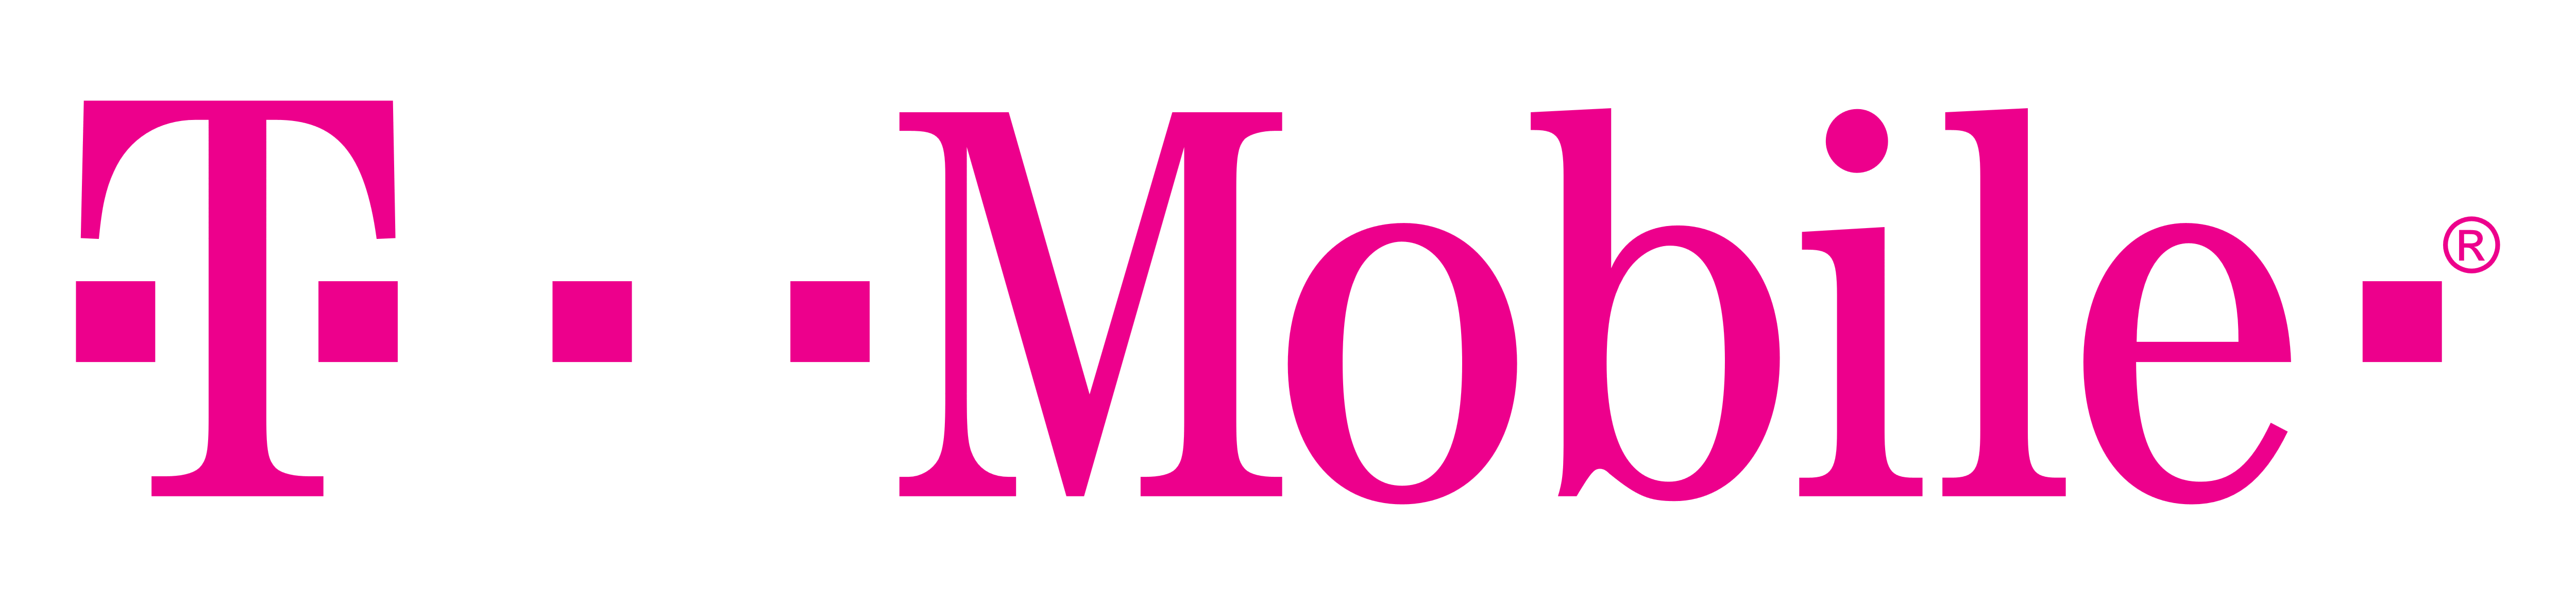 Pink T Logo - T Mobile Logo, Logotype, Pink